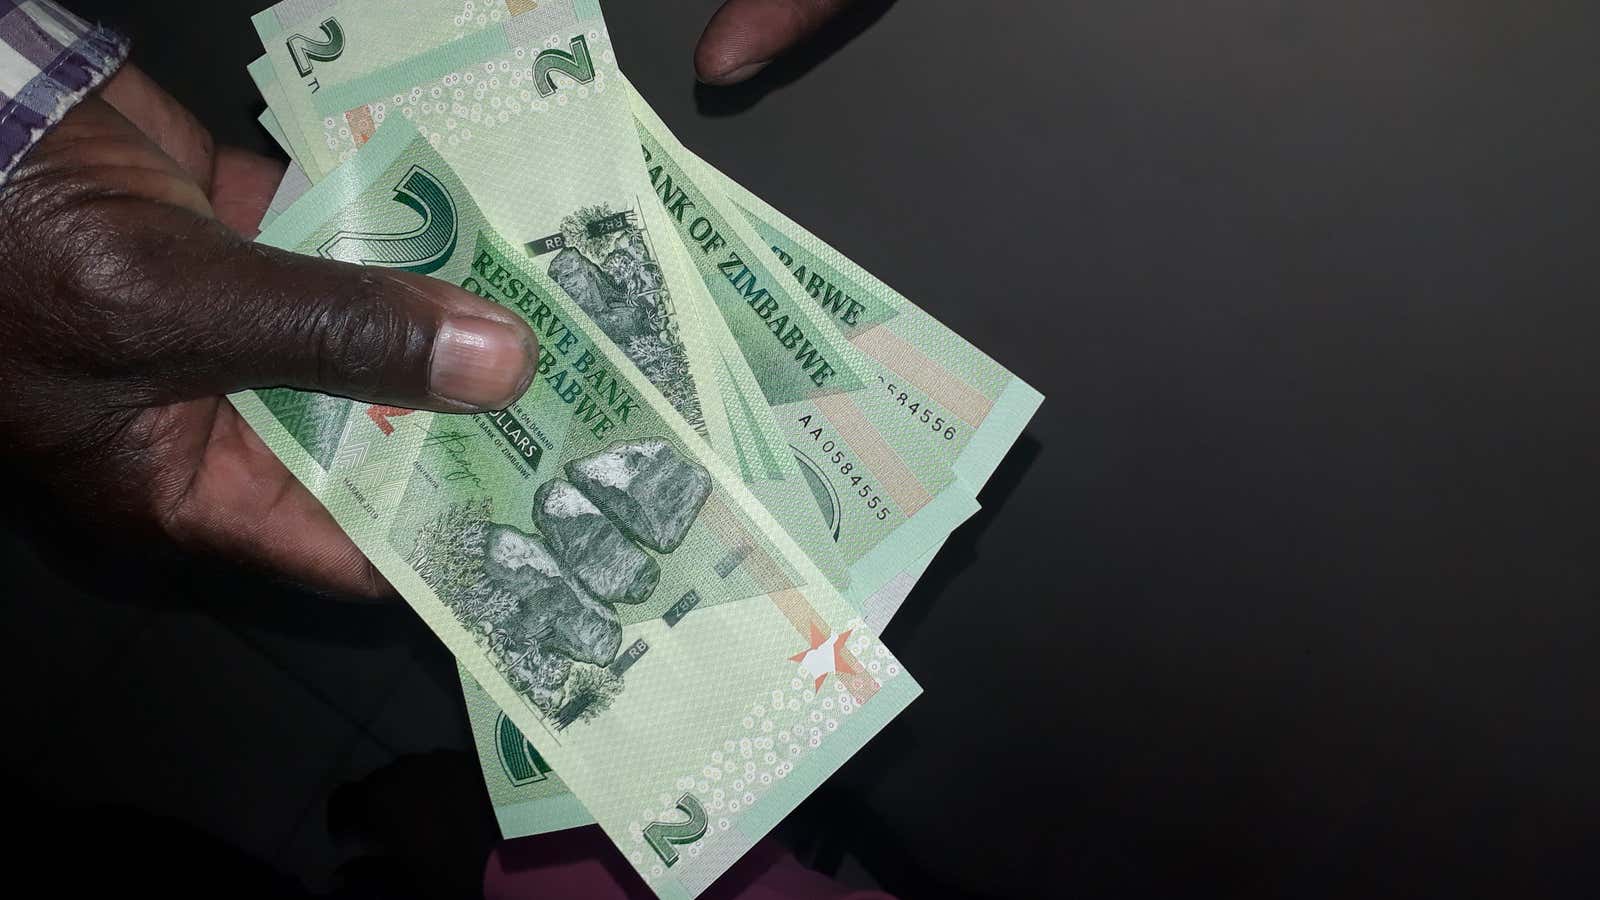 Cash money. The new Zimbabwe dollar